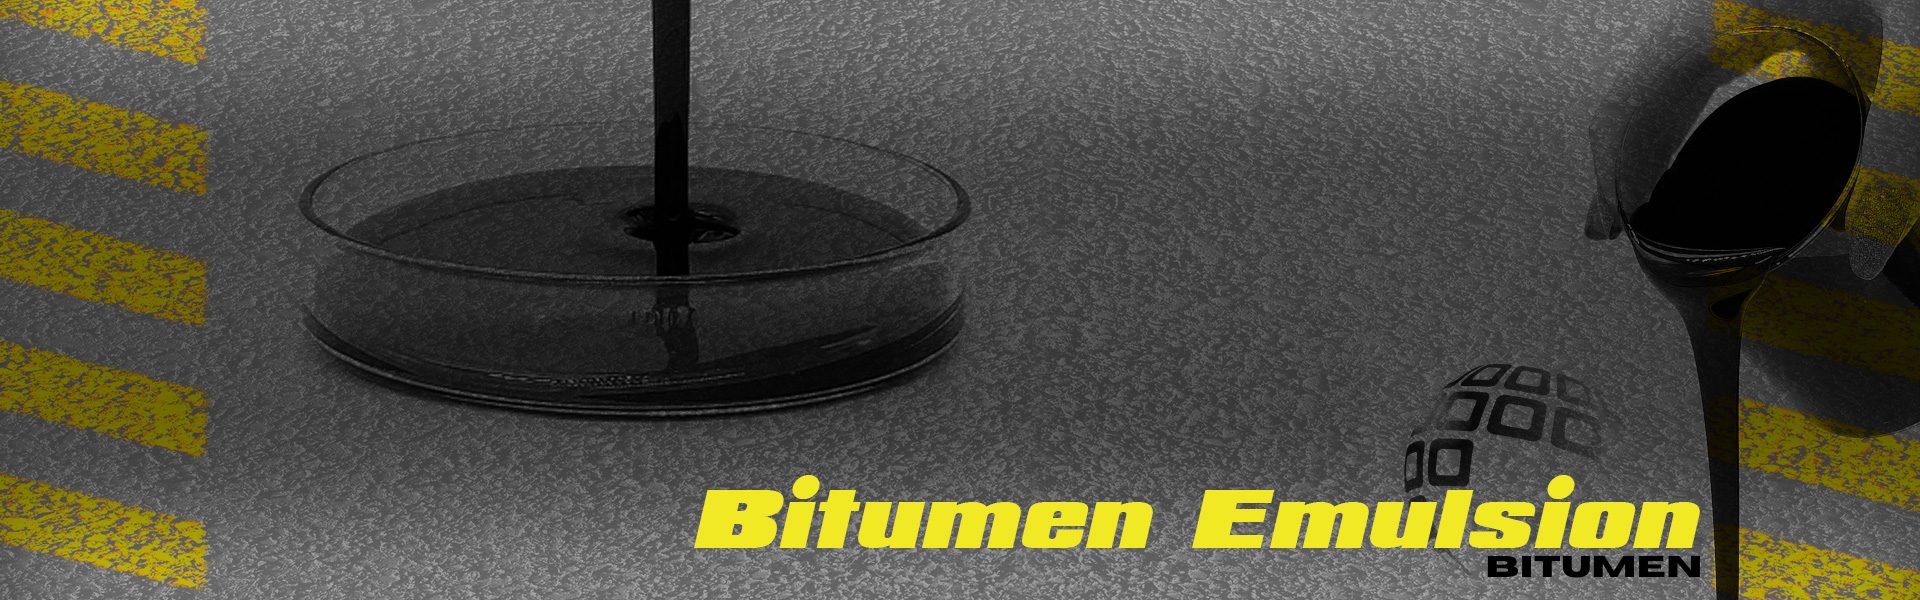 Hedaer_Bitumen-Emulsion